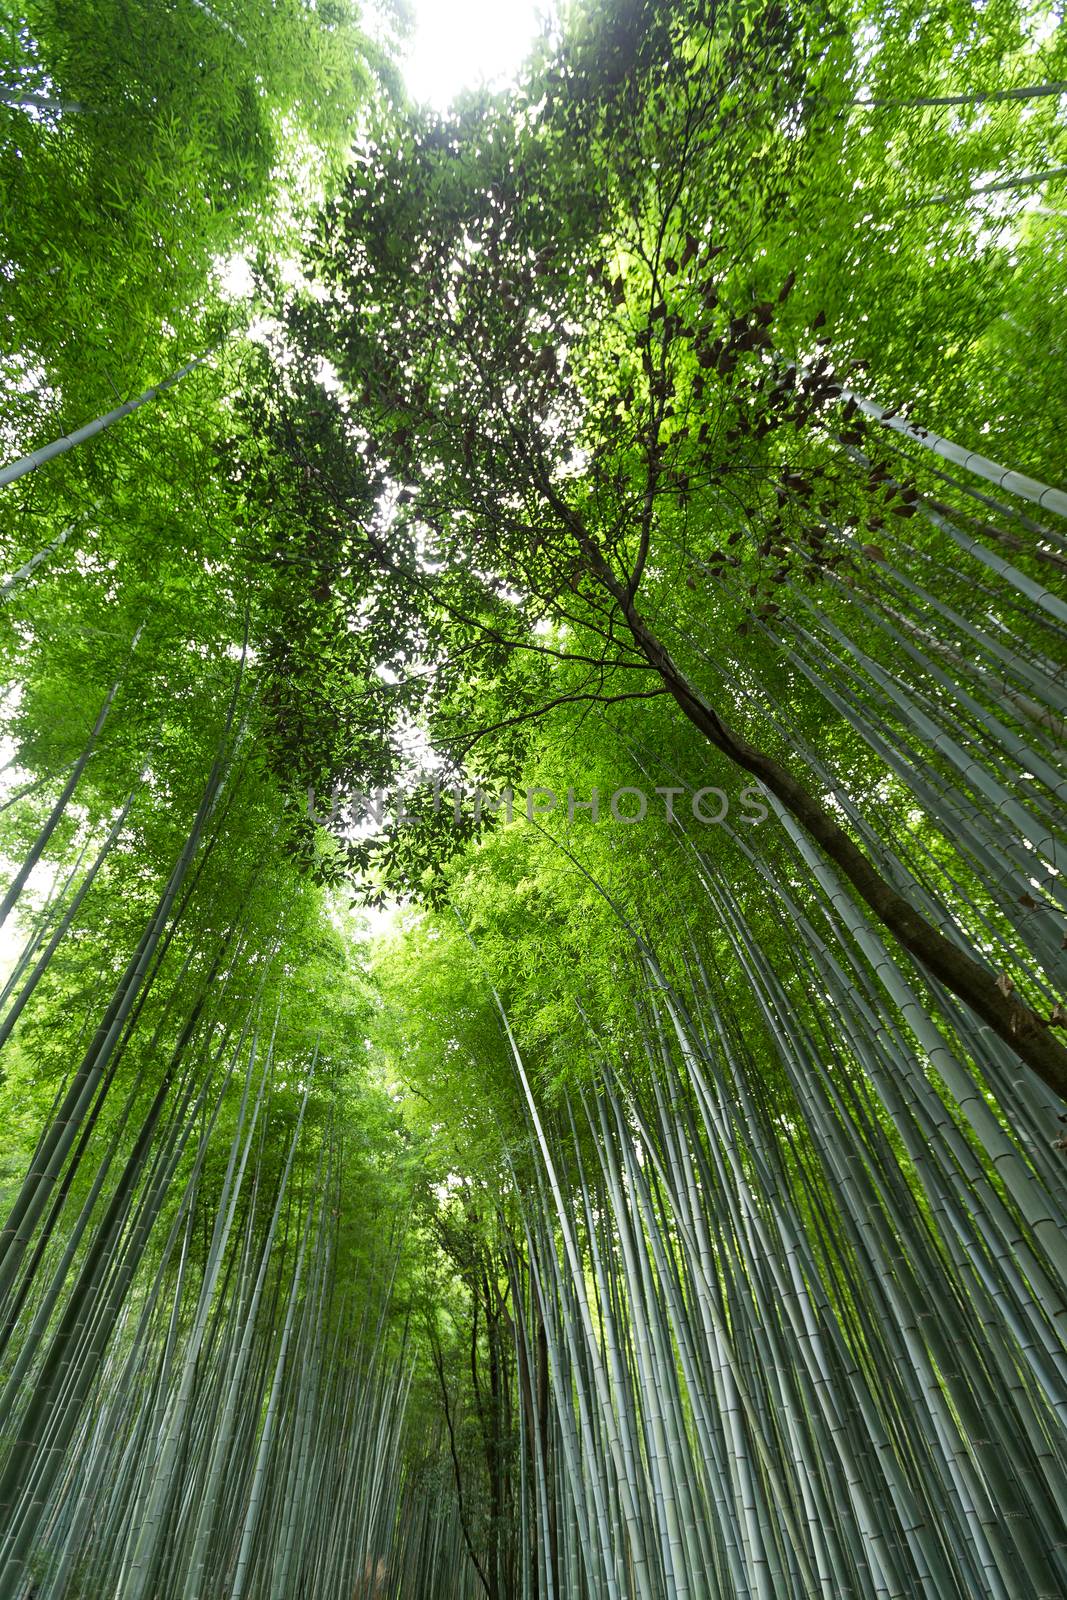 Bamboo forest at Arashiyama in Kyoto by leungchopan